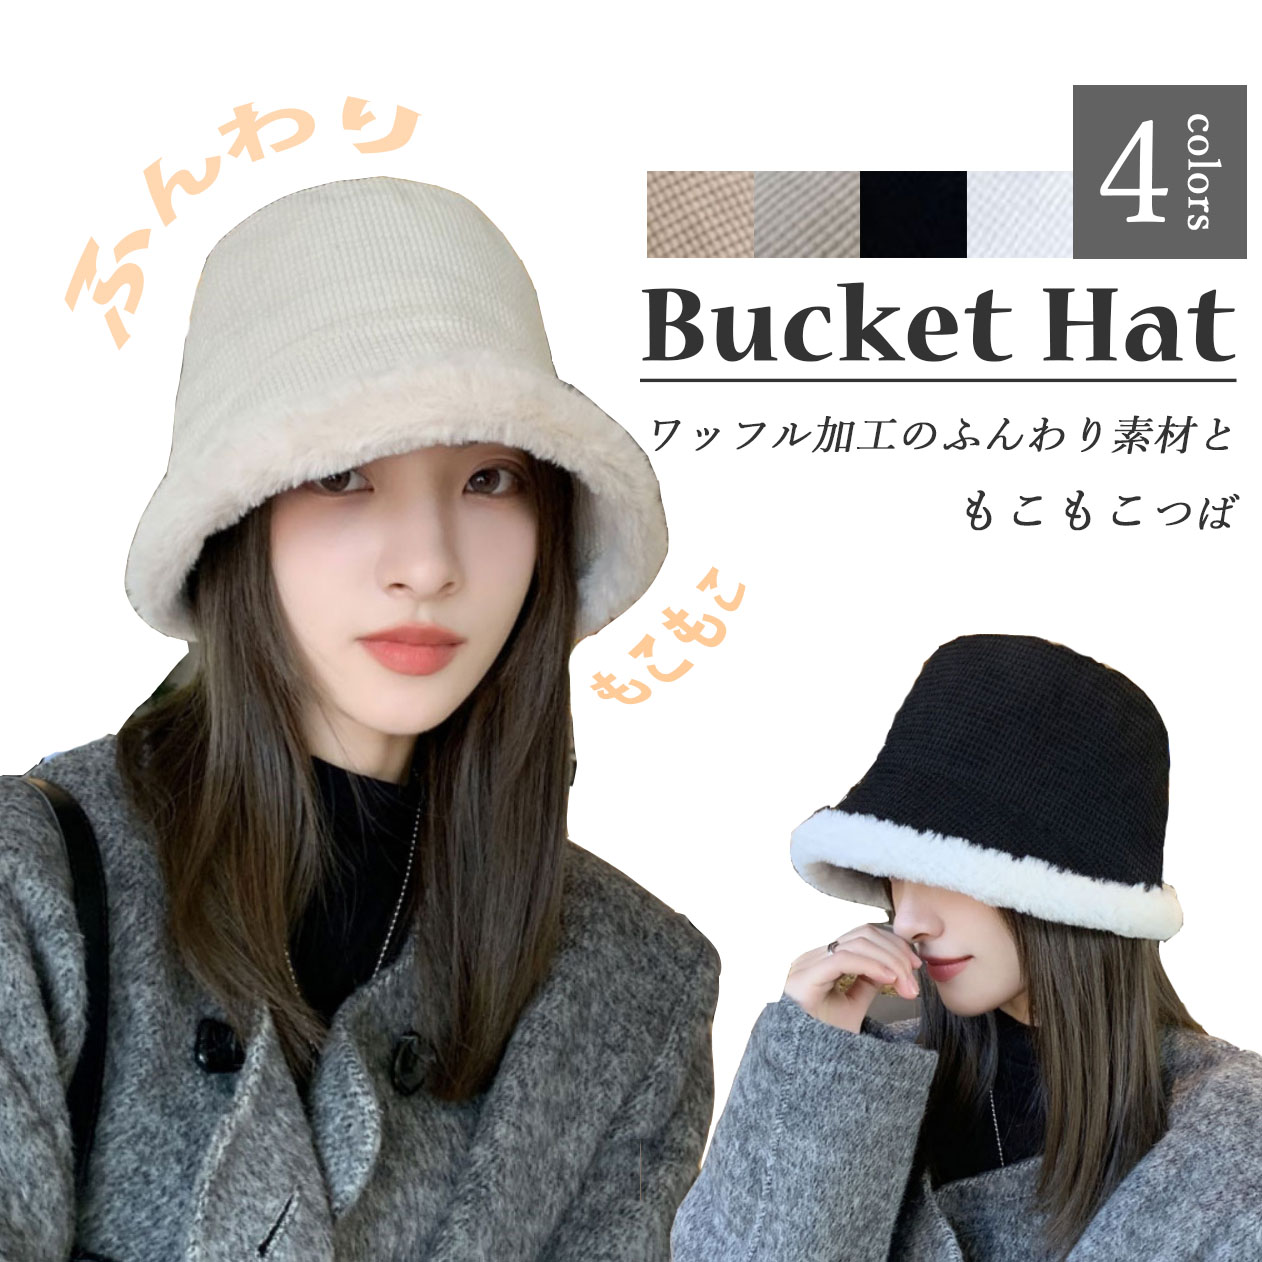 【日本倉庫即納】新作 レディース 帽子 バケットハット もこもこ 防寒 保温 伸縮 小顔効果 伸縮 かわいい